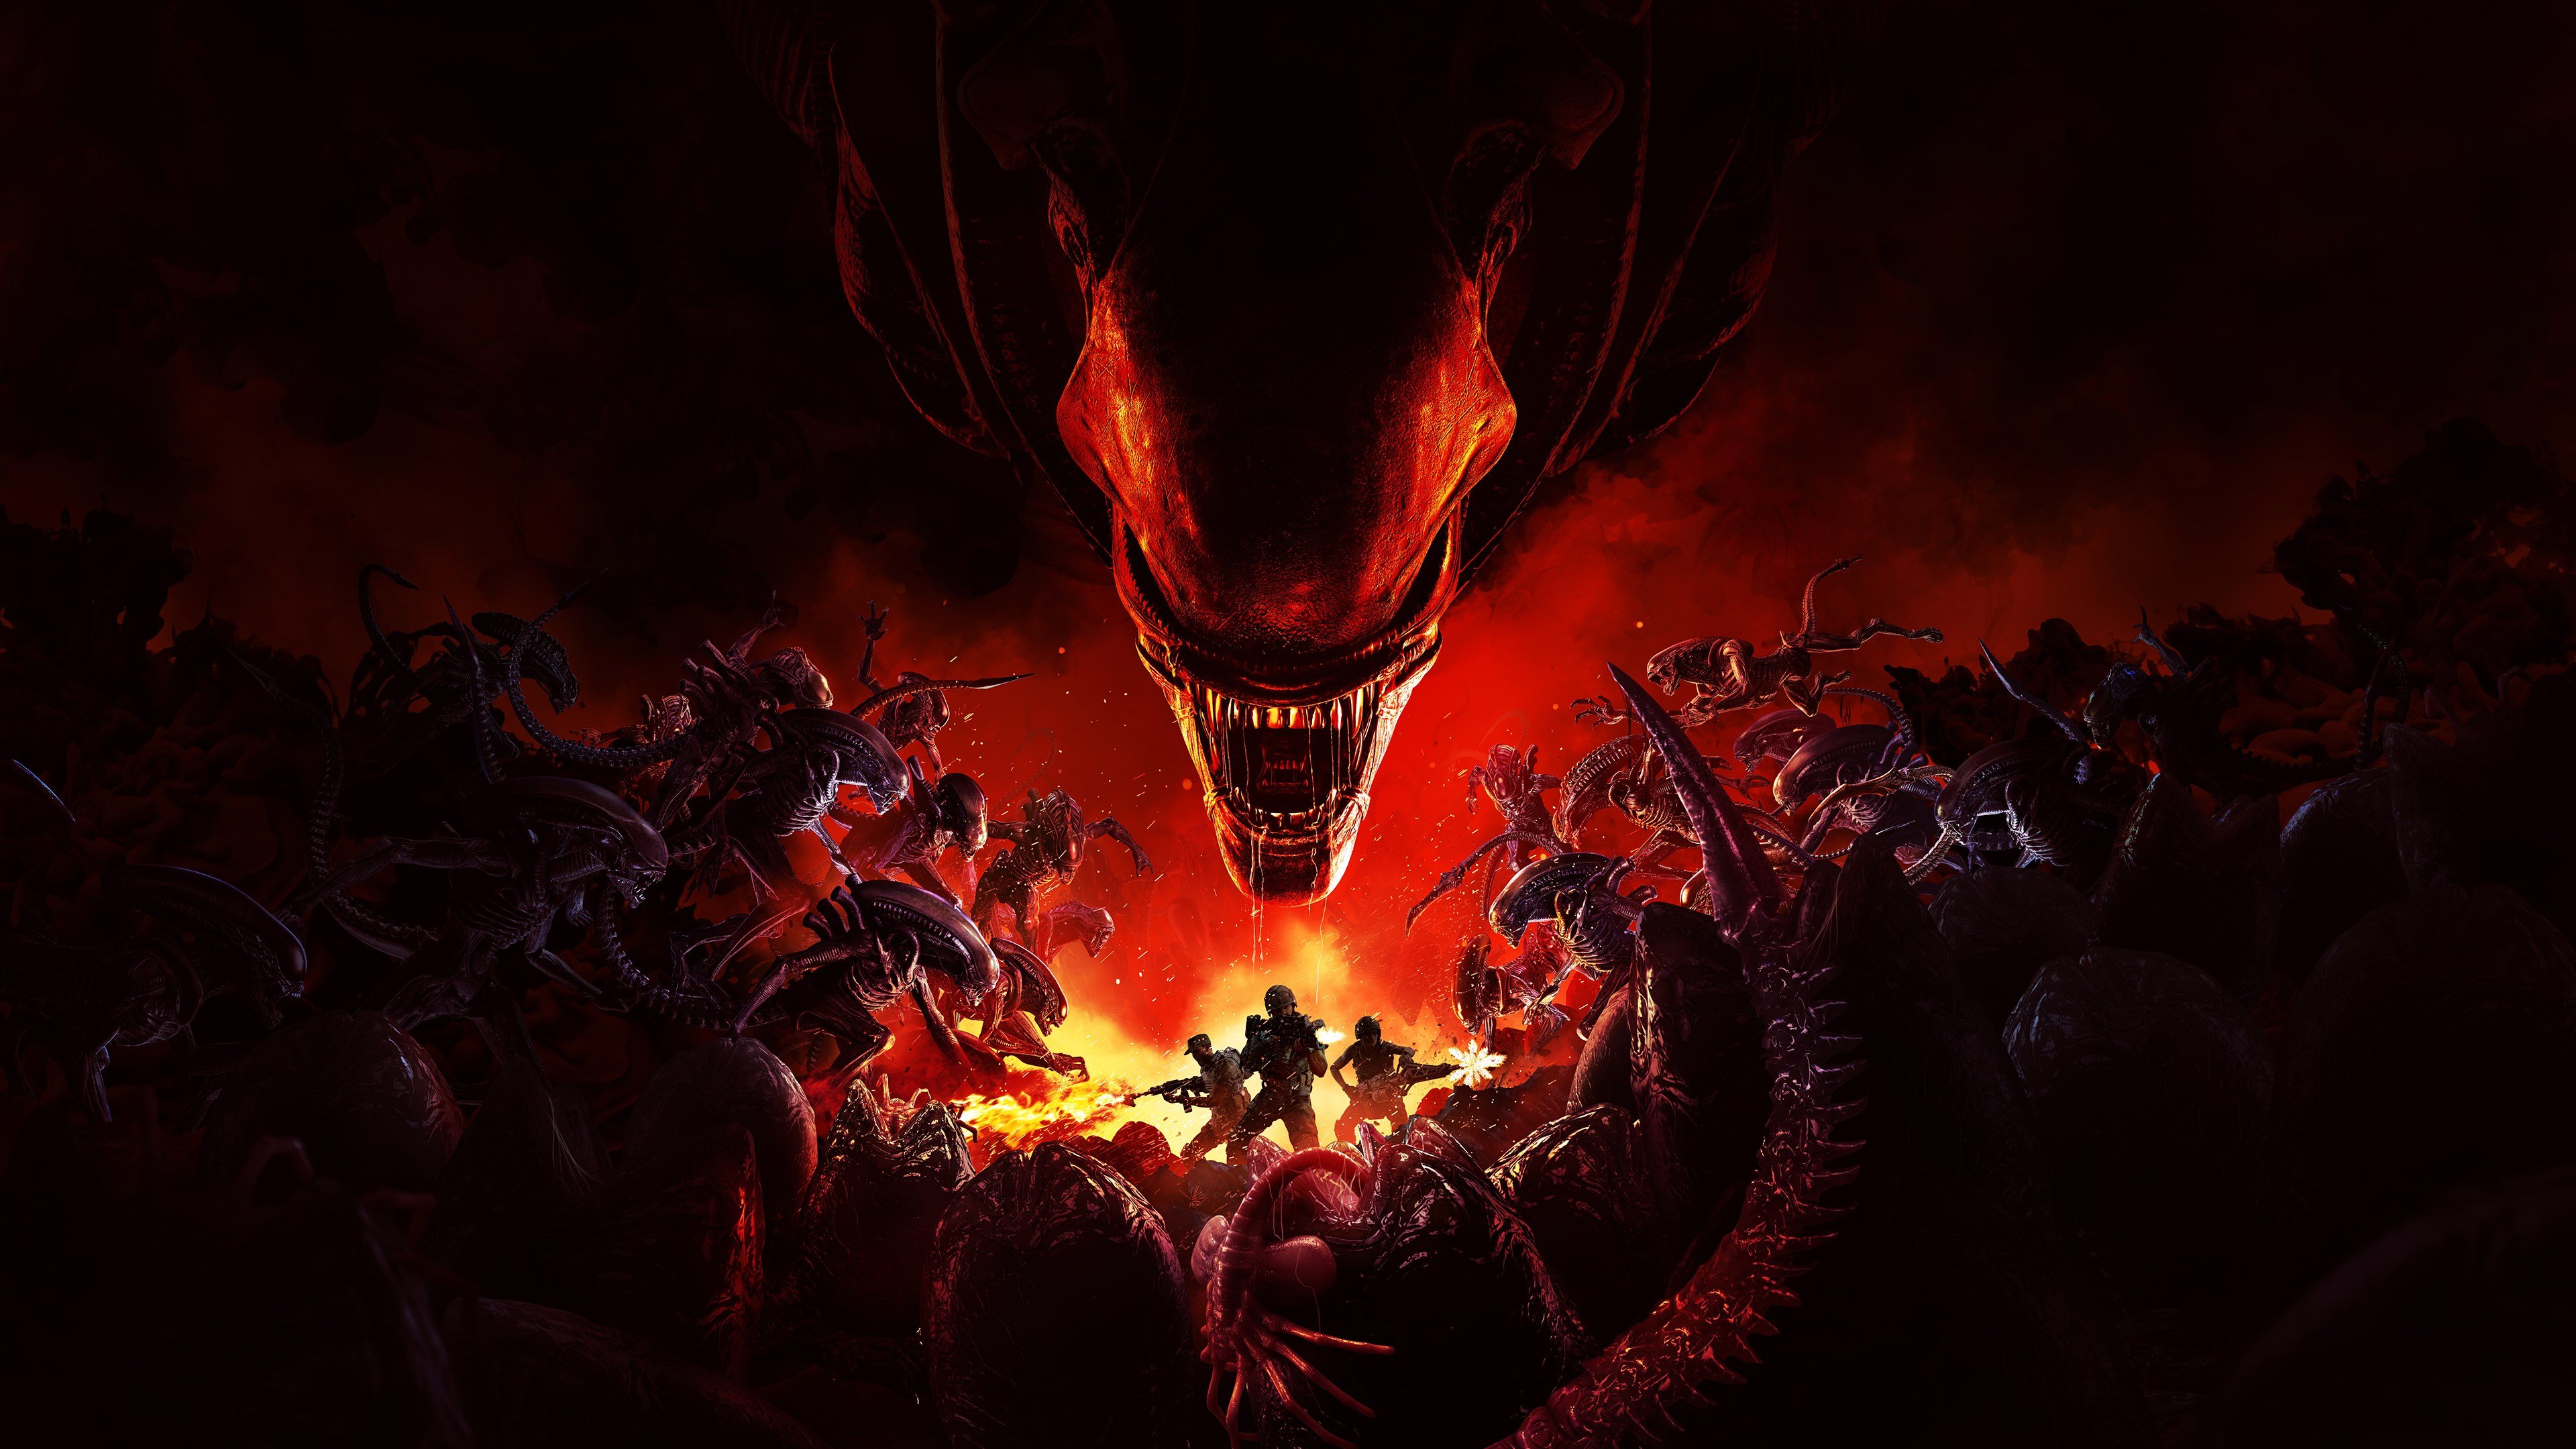 Aliens: Fireteam Elite cover image